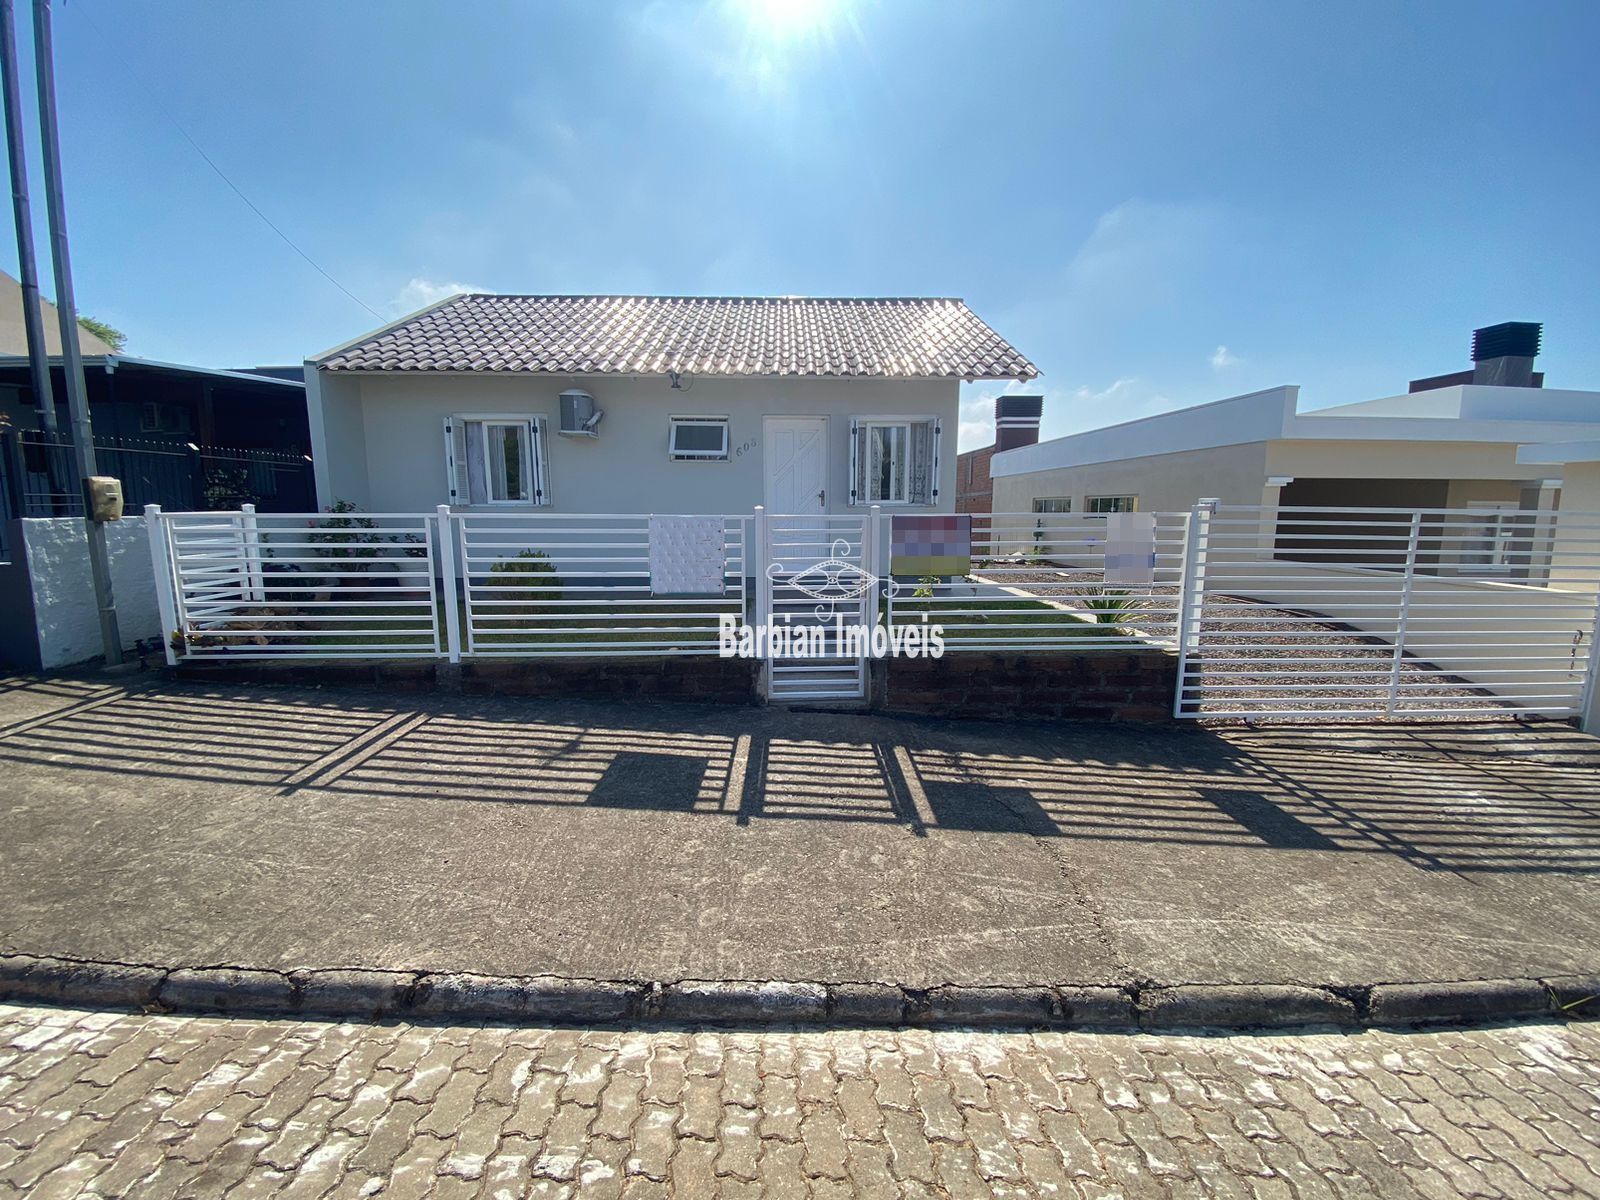 Casa  venda  no Joo Alves - Santa Cruz do Sul, RS. Imveis